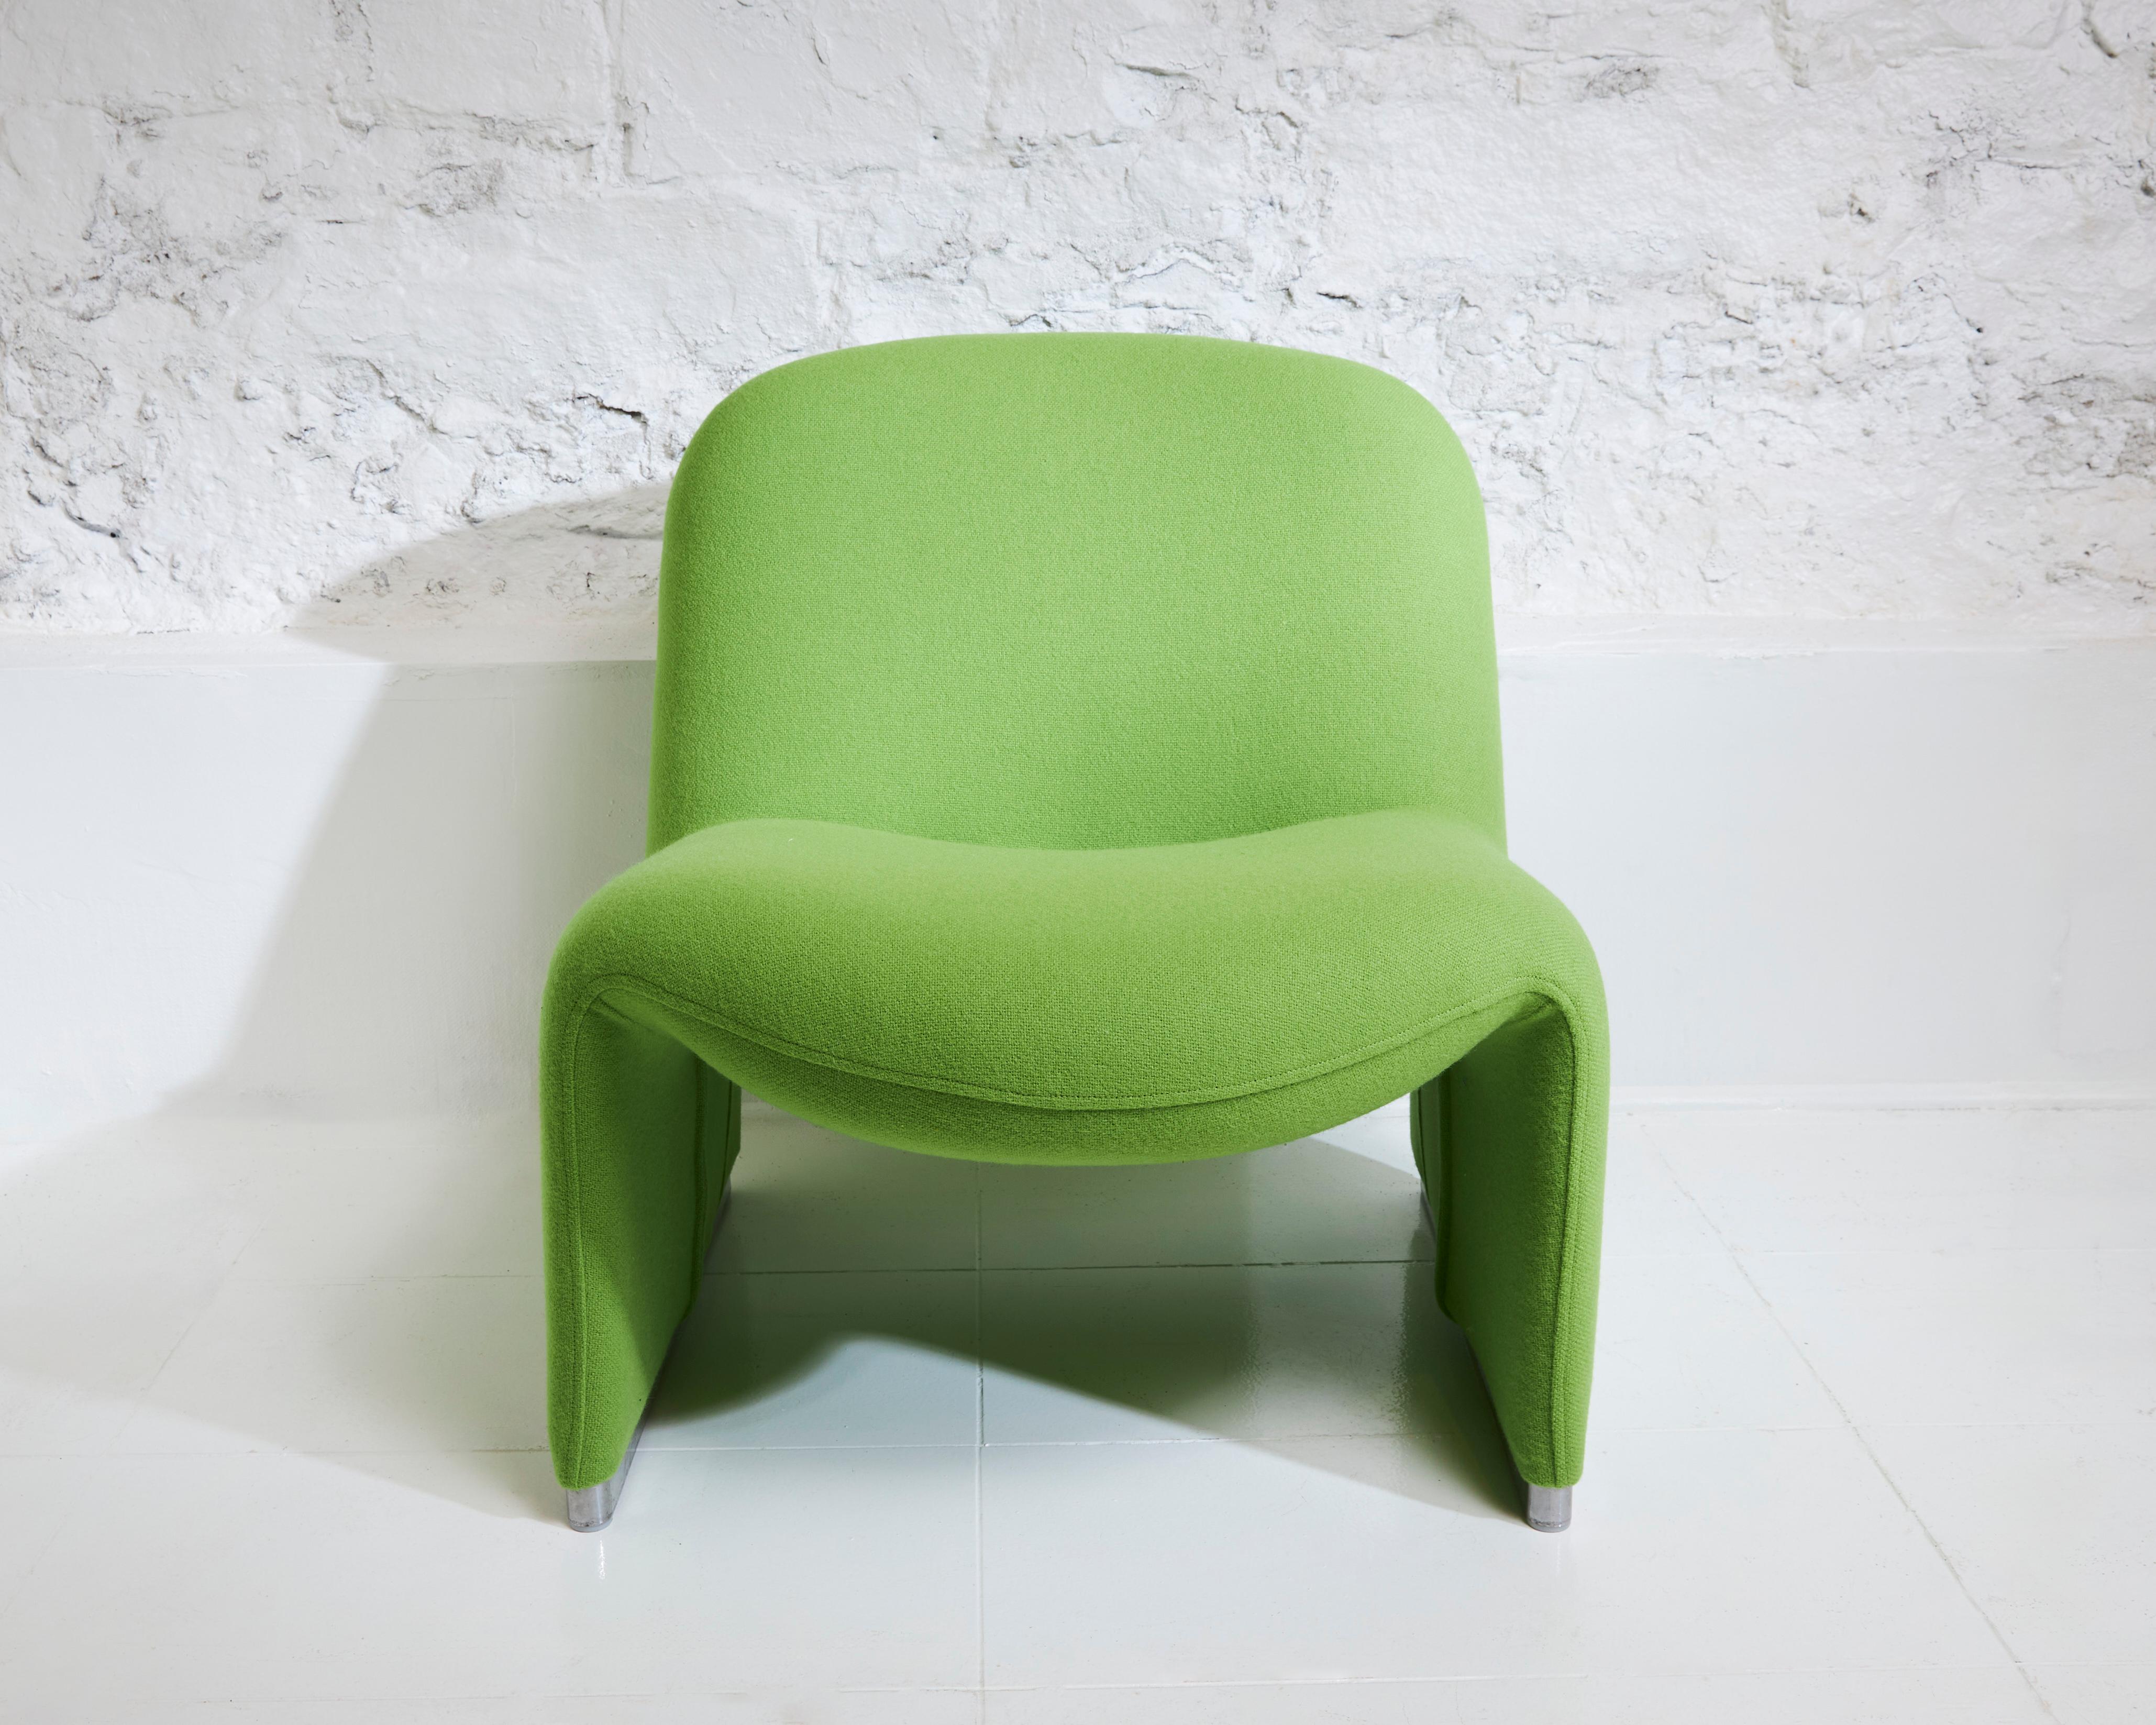 Le fauteuil Alky, créé par Giancarlo Piretti à la fin des années 1960, continue de séduire par son design distinctif de chaise longue, qui reste encore aujourd'hui inégalé. Ce fauteuil multifonctionnel allie harmonieusement confort, design et